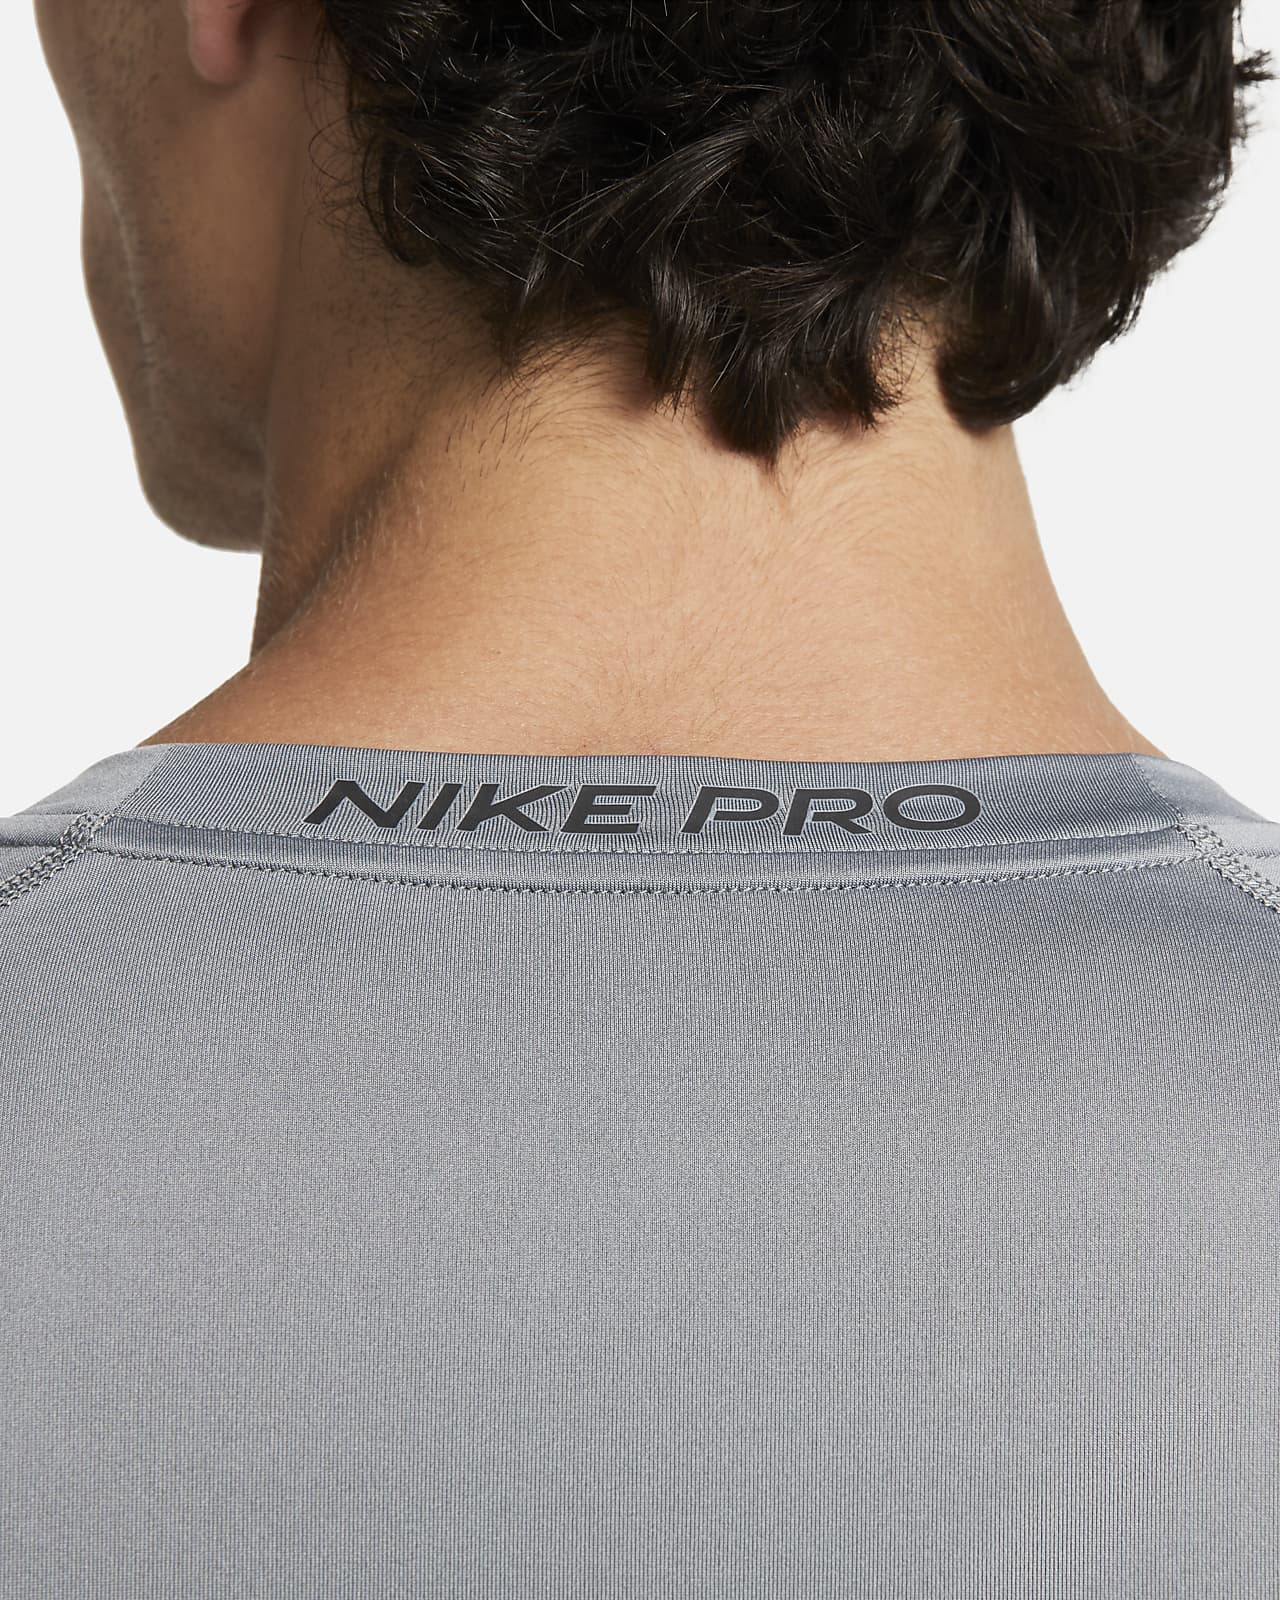 Nike Pro Clothing. Nike IN